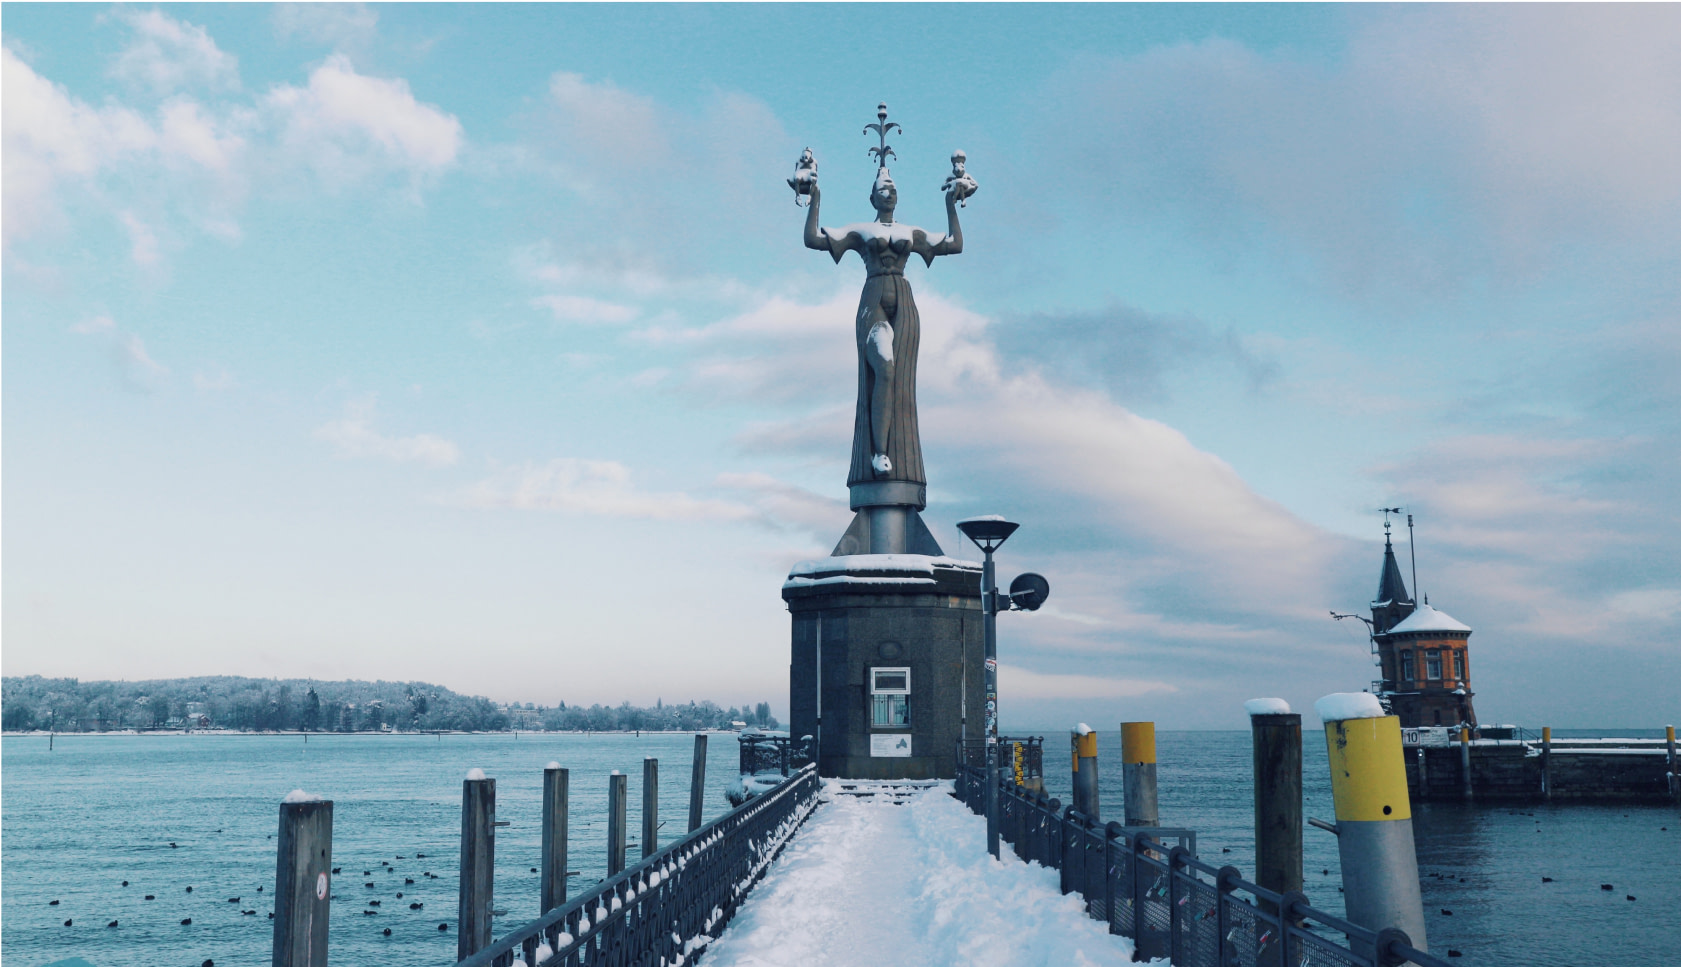 Von Schnee bedeckte Imperia Statue im Konstanzer Hafen